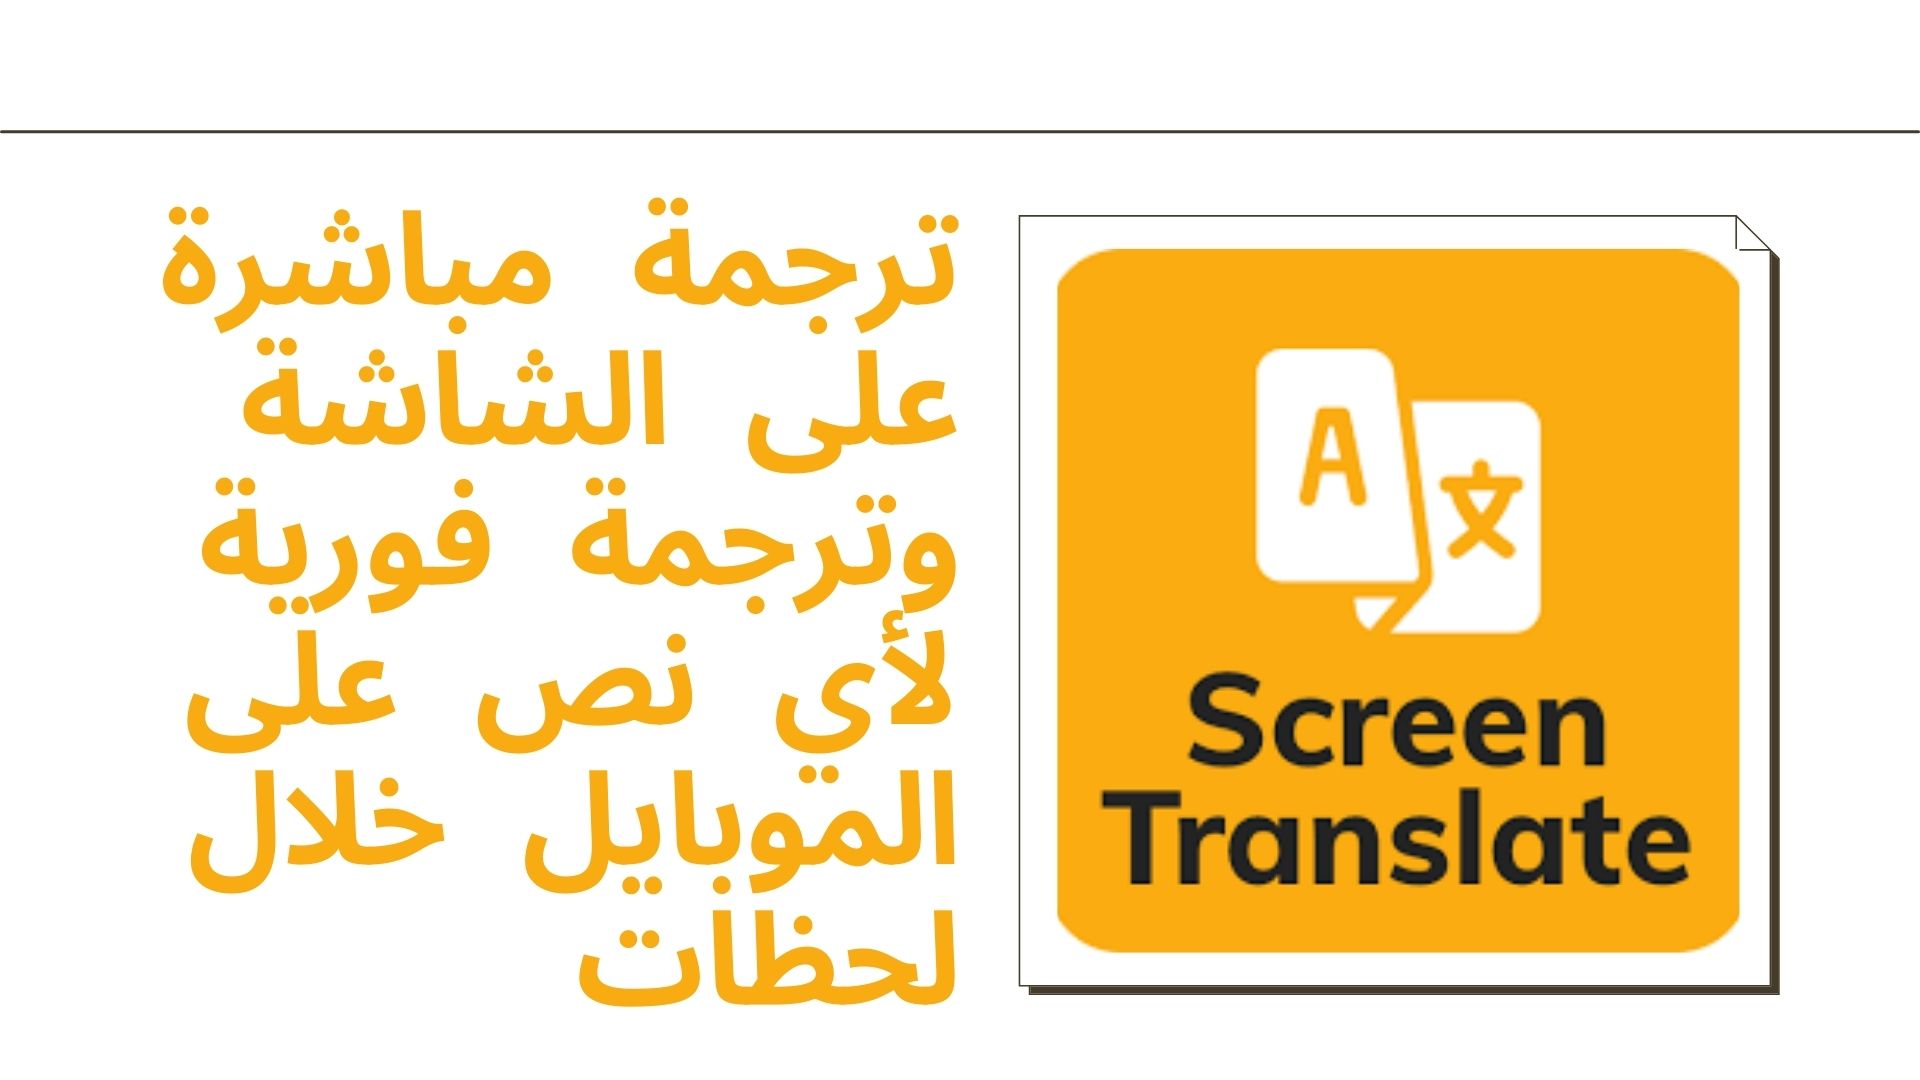 ترجمة مباشرة على الشاشة وترجمة فورية لأي نص على الموبايل خلال لحظات